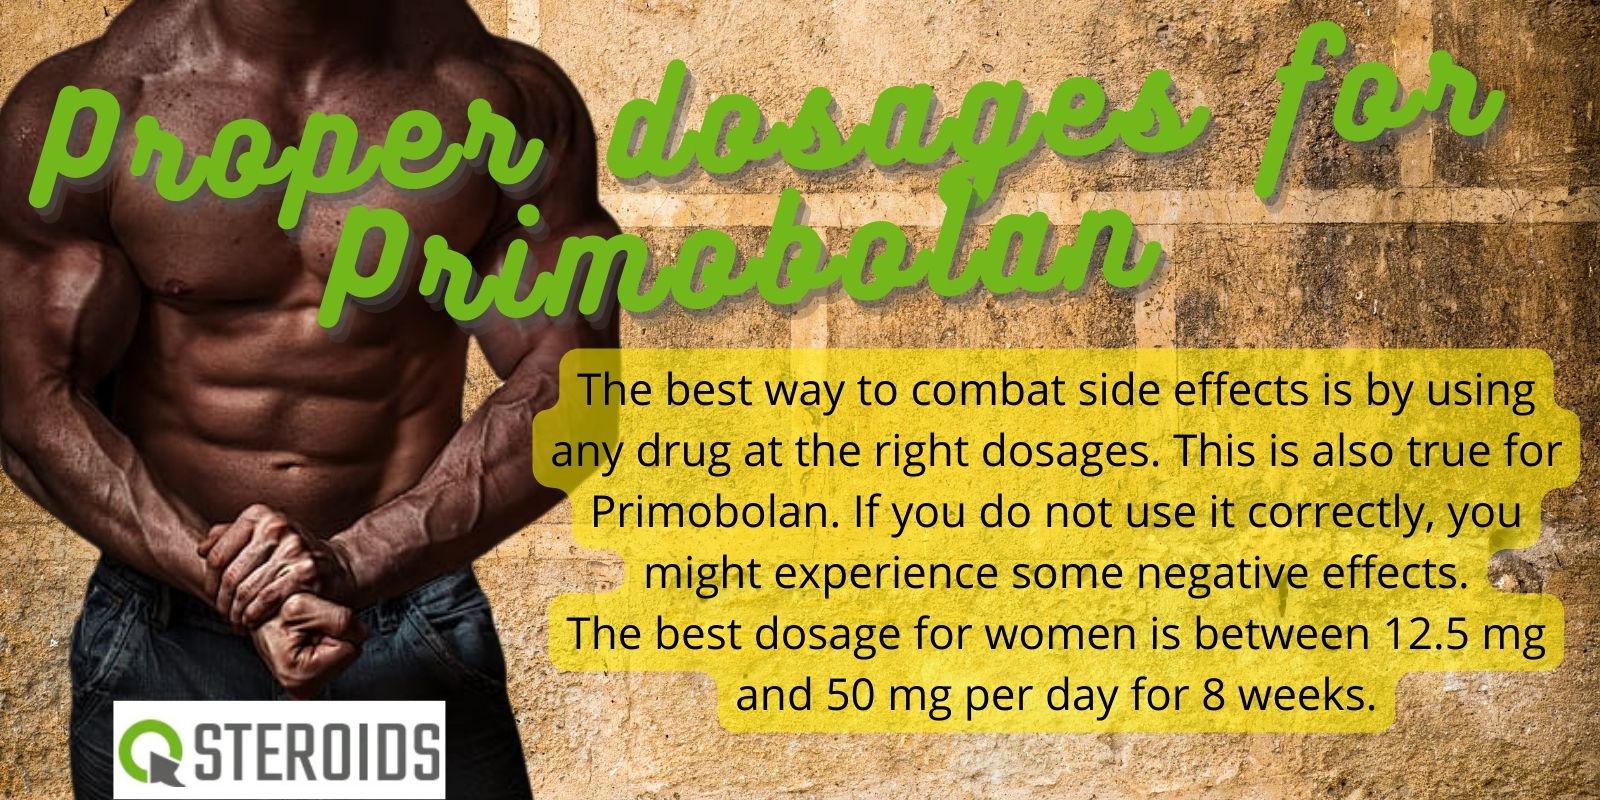 Proper dosages for Primobolan